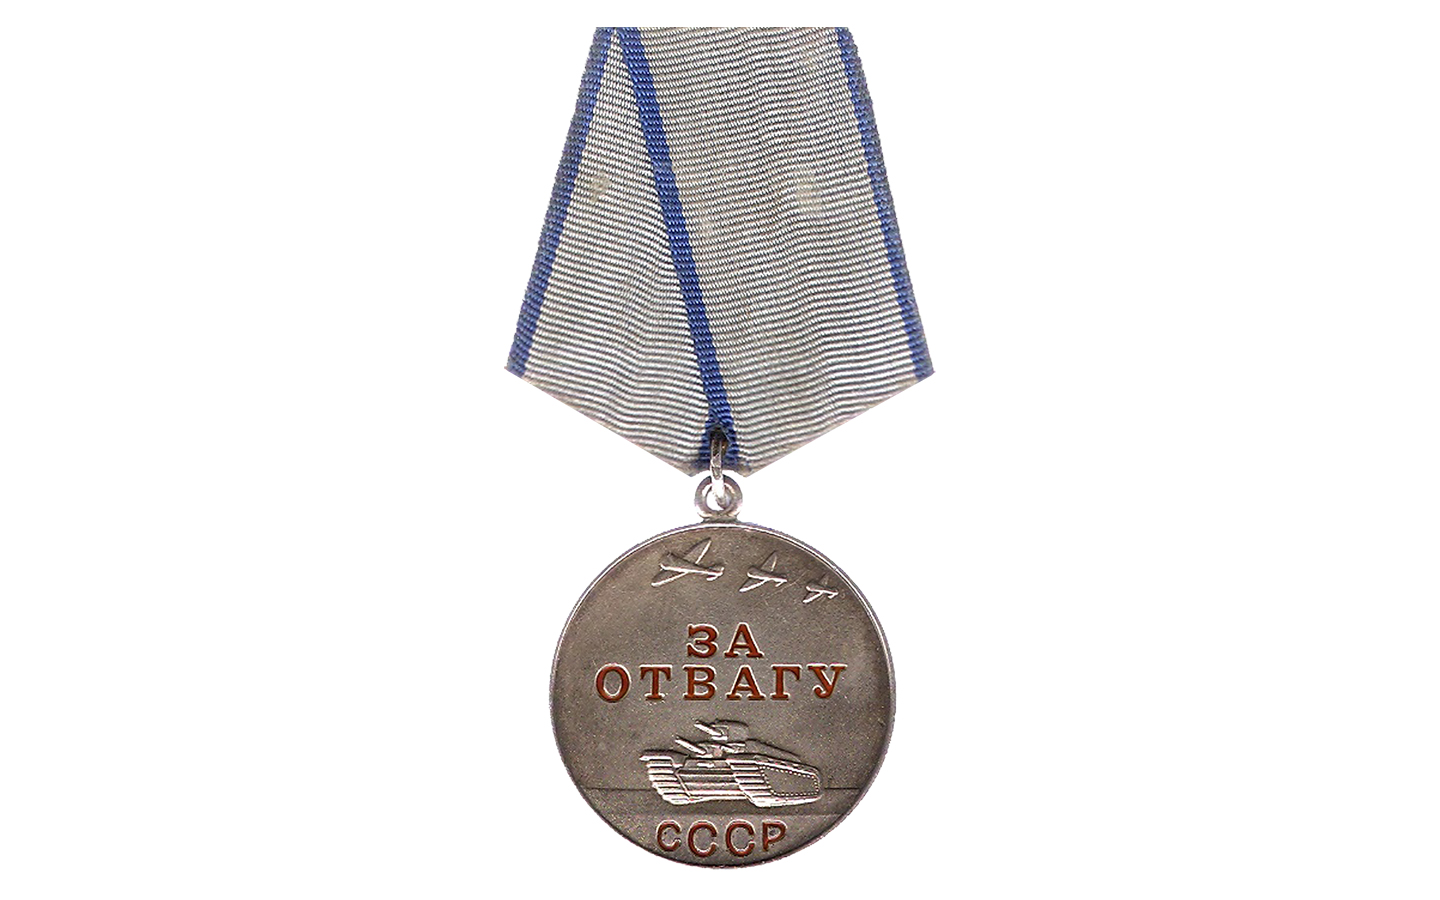 Медаль «За отвагу», которой был награжден Н. Яненко в 1944 г.